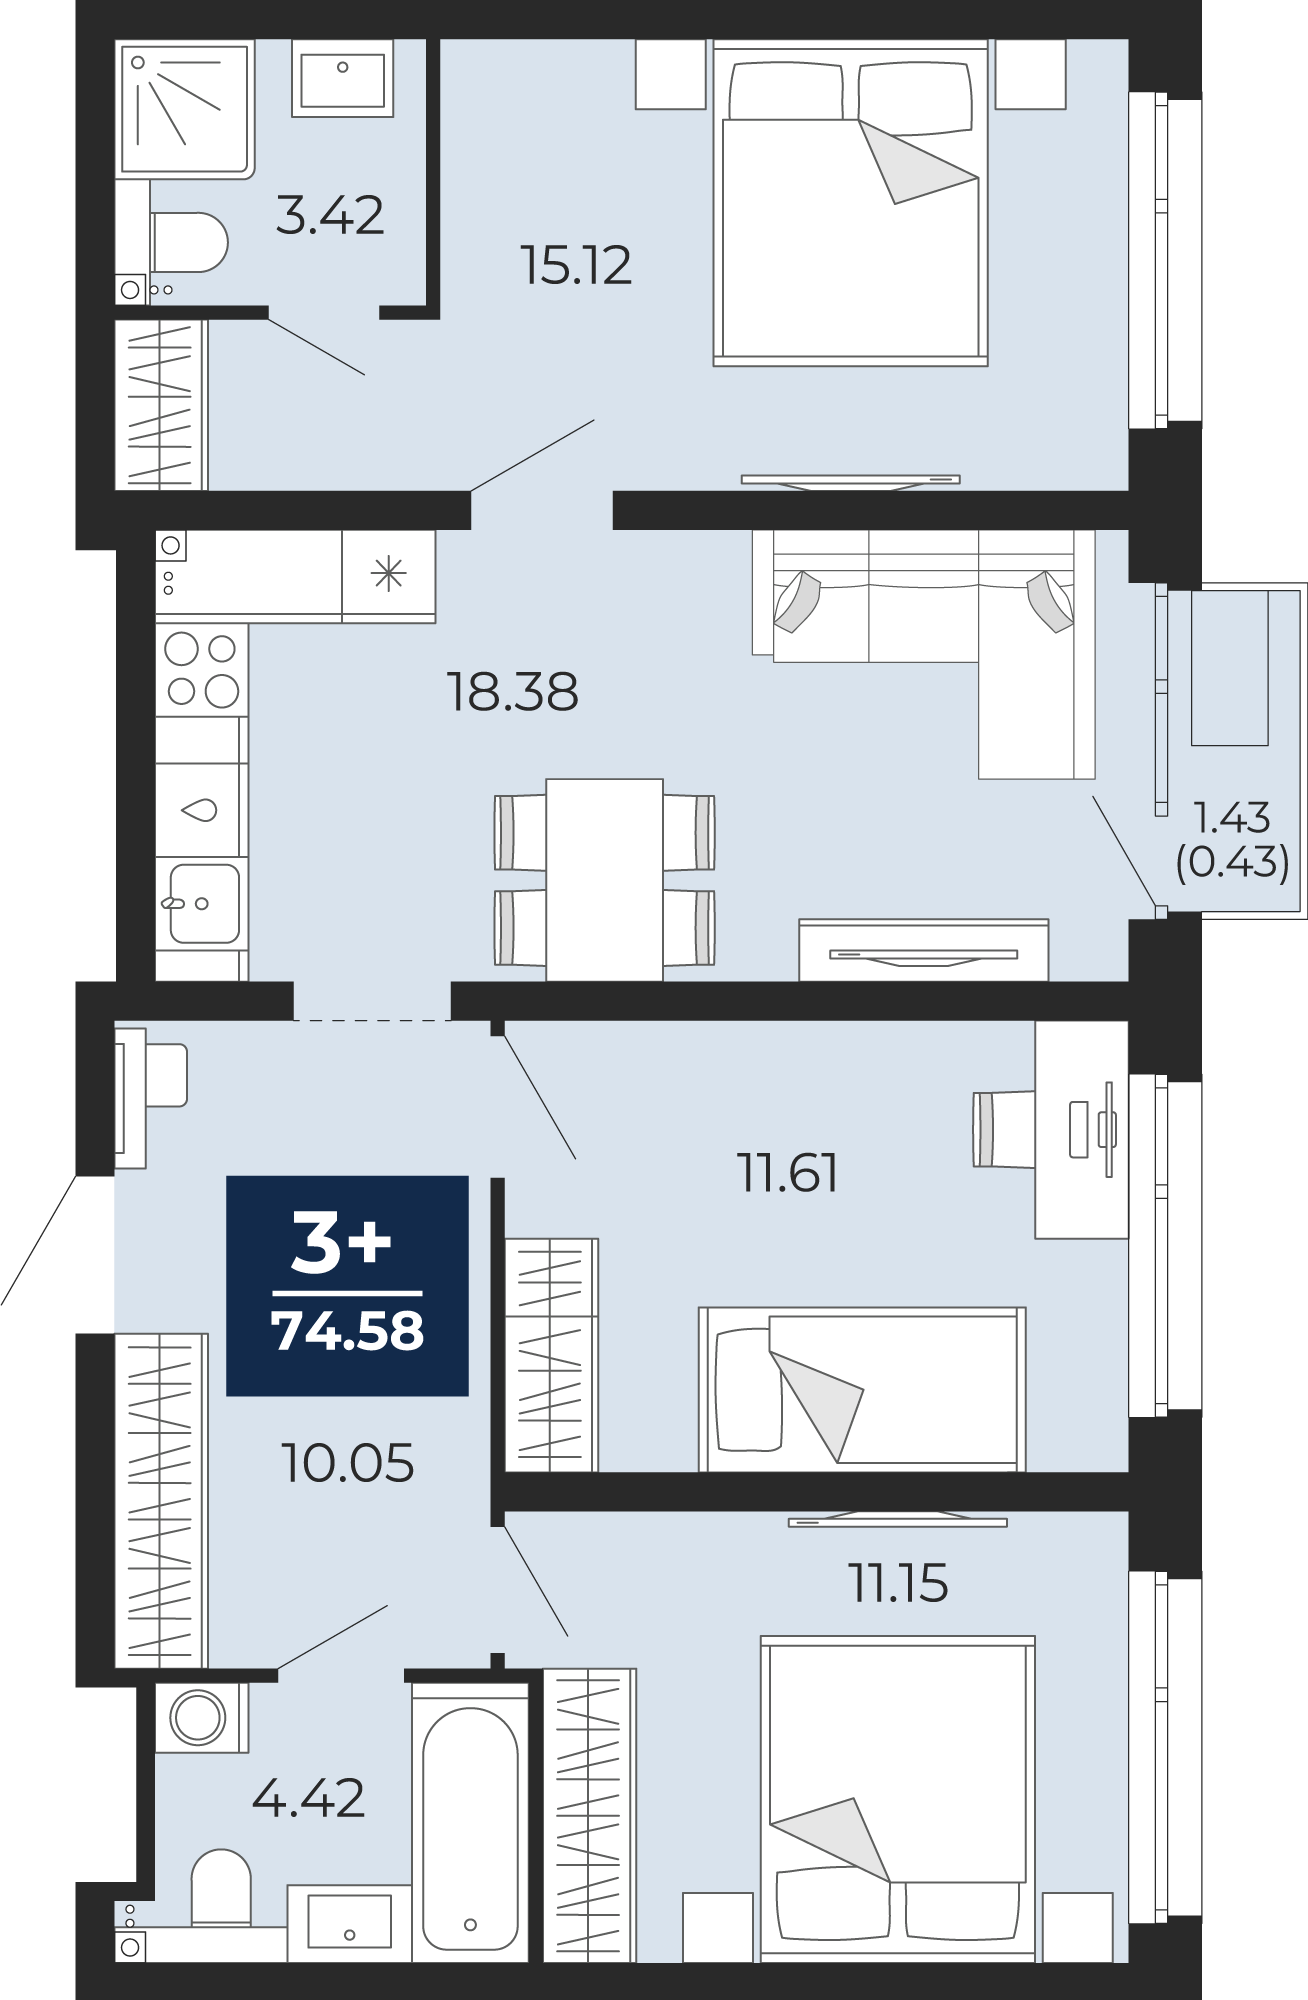 Квартира № 377, 3-комнатная, 74.58 кв. м, 10 этаж